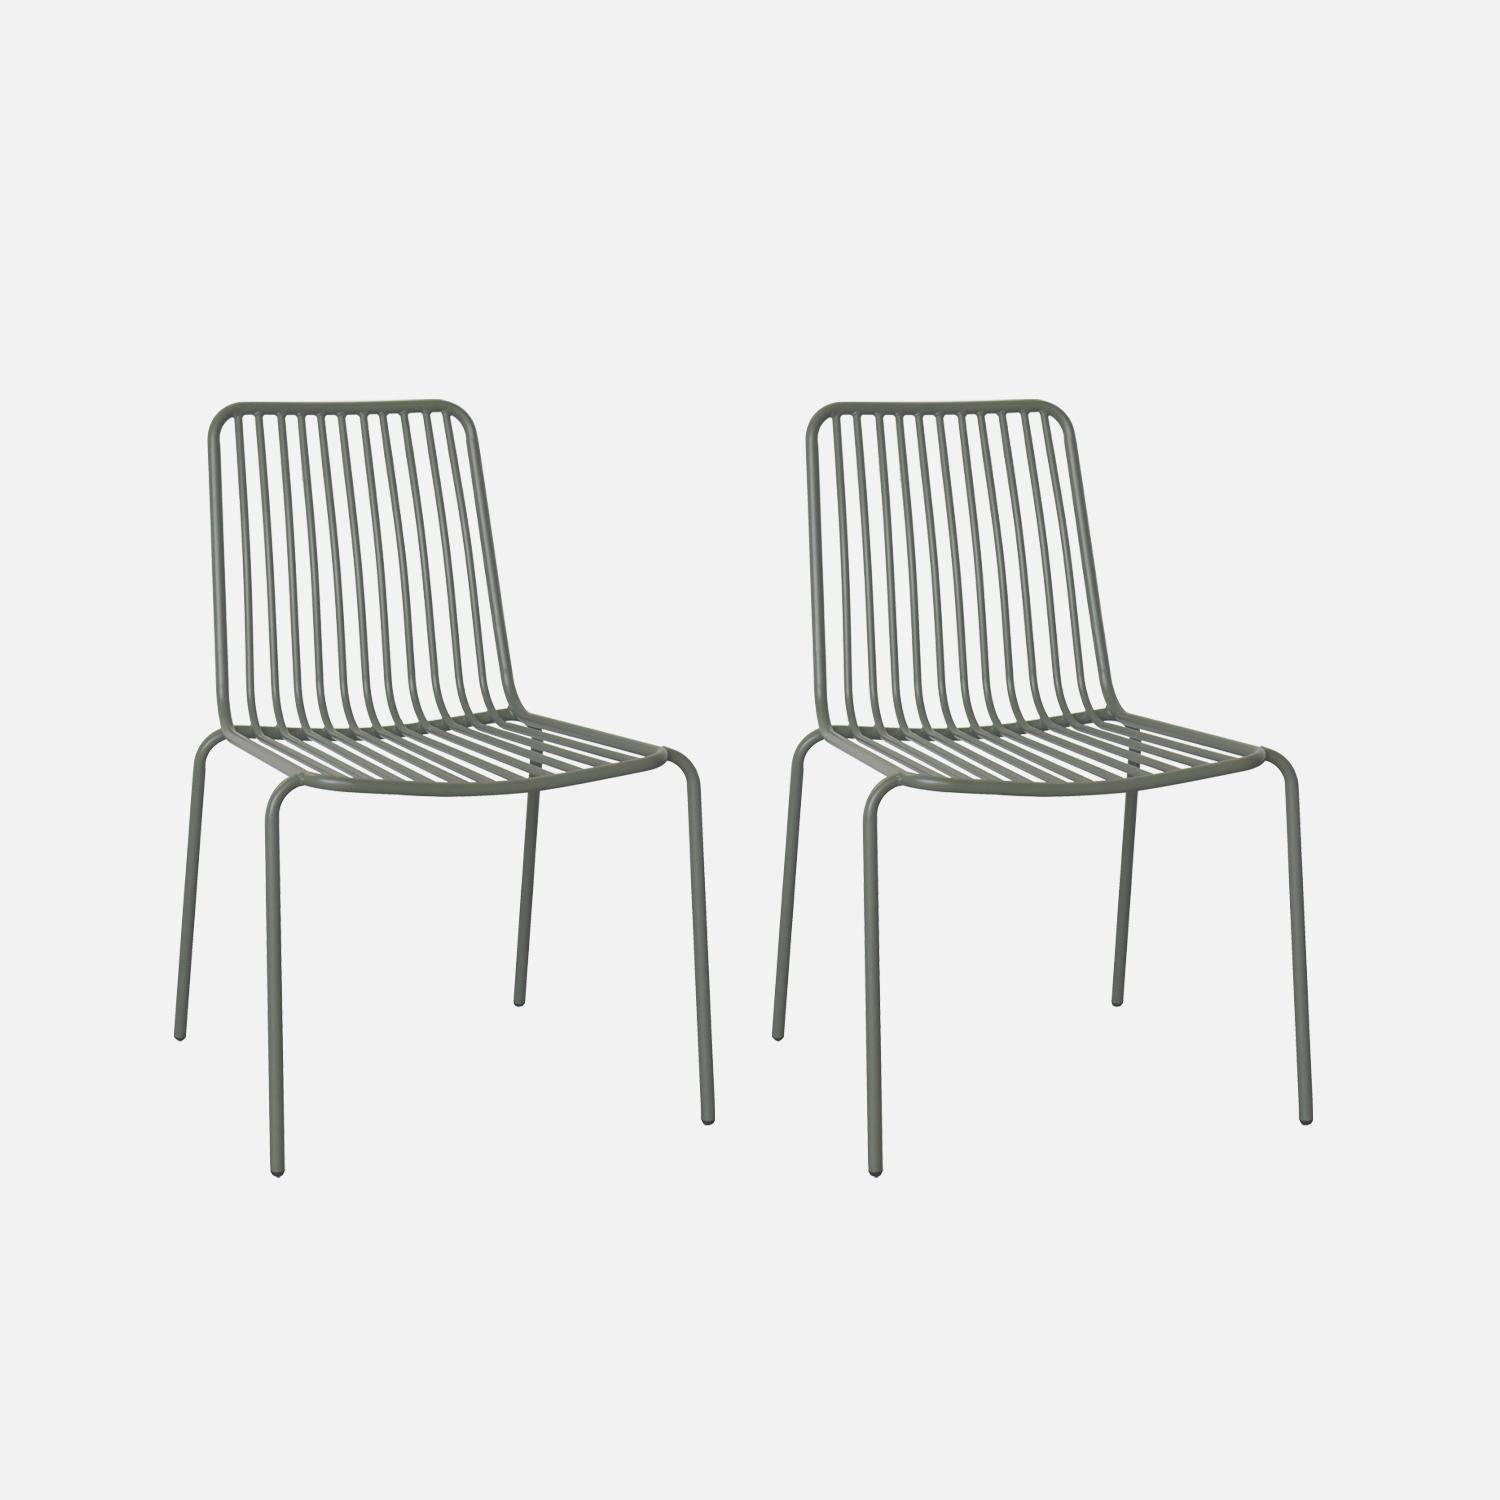 Lot de 2 chaises de jardin en acier savane, empilables, design linéaire  Photo1